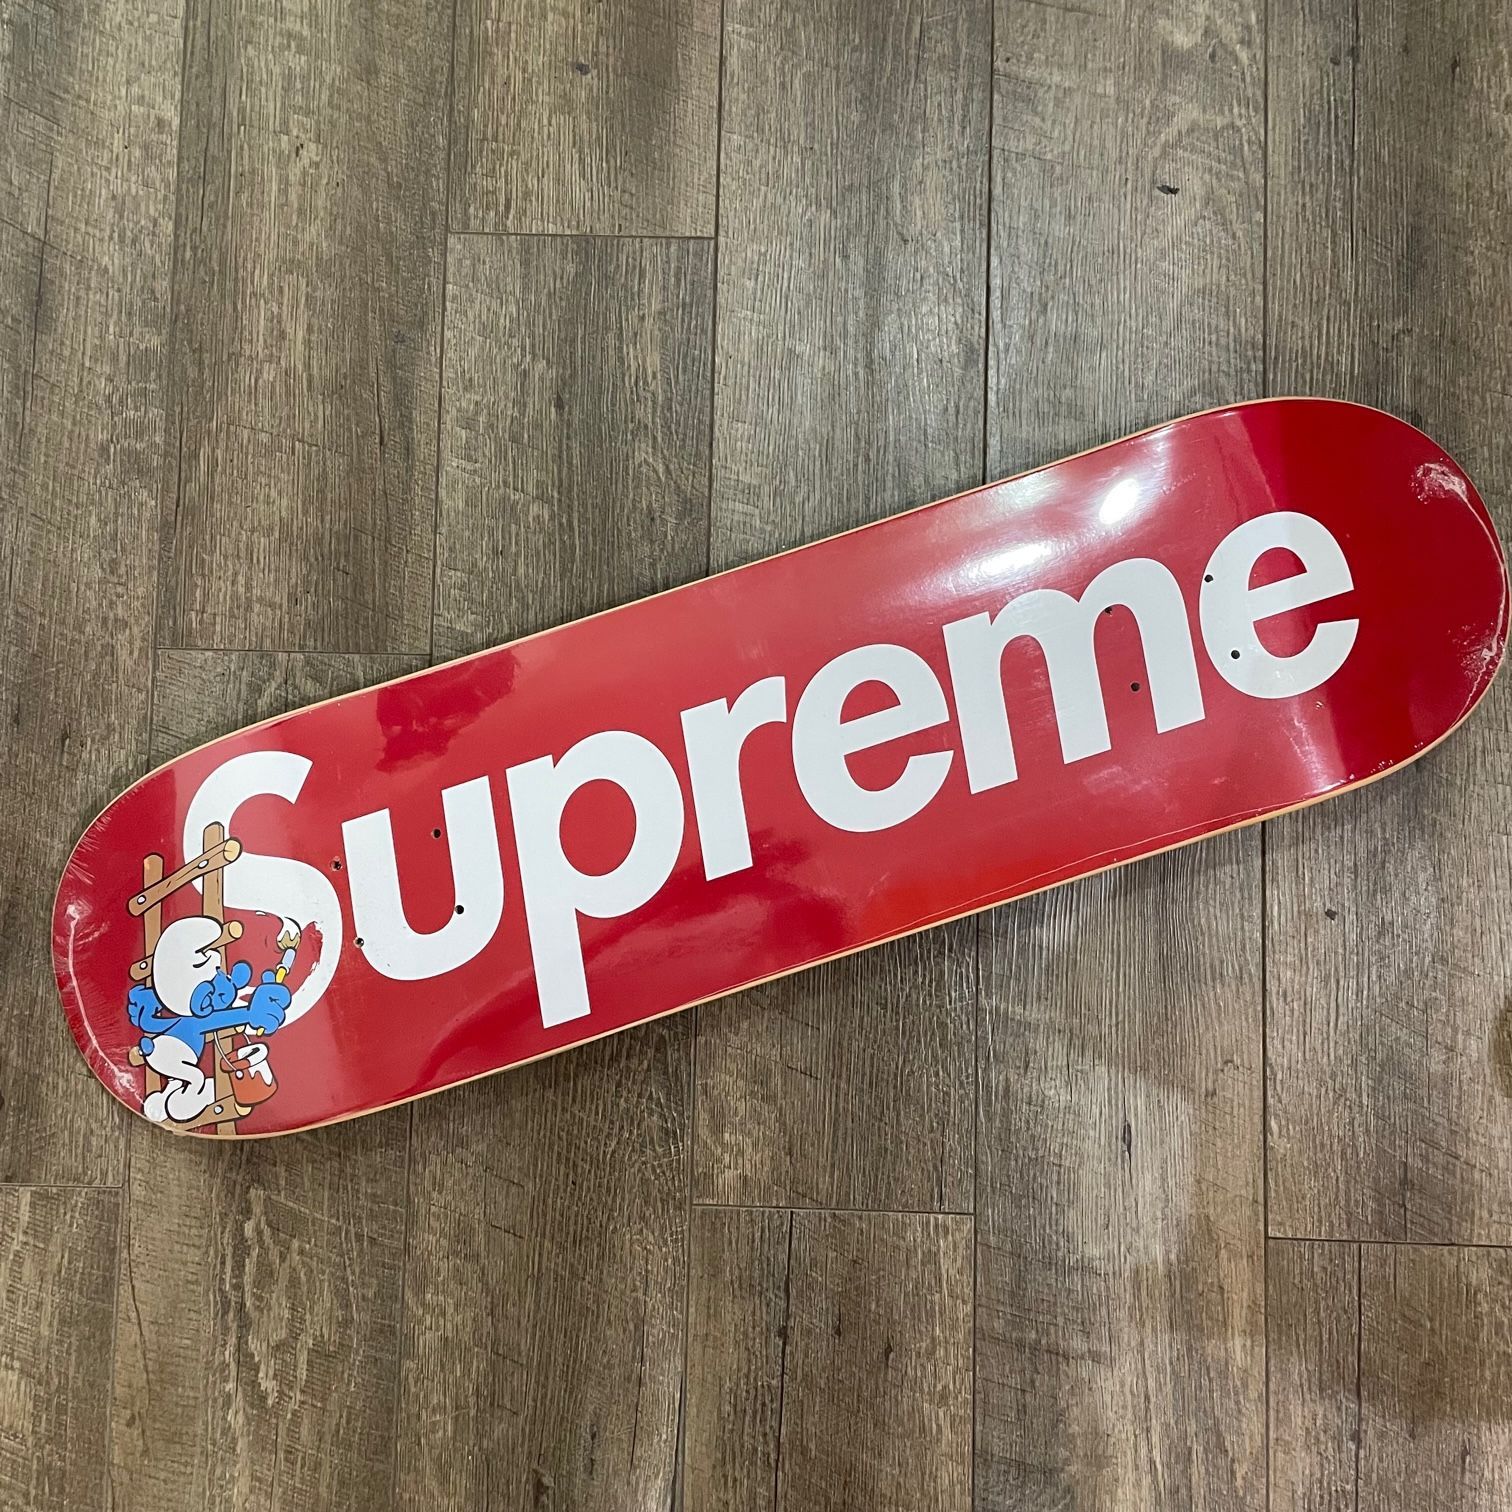 Supreme Smurfs Skateboard